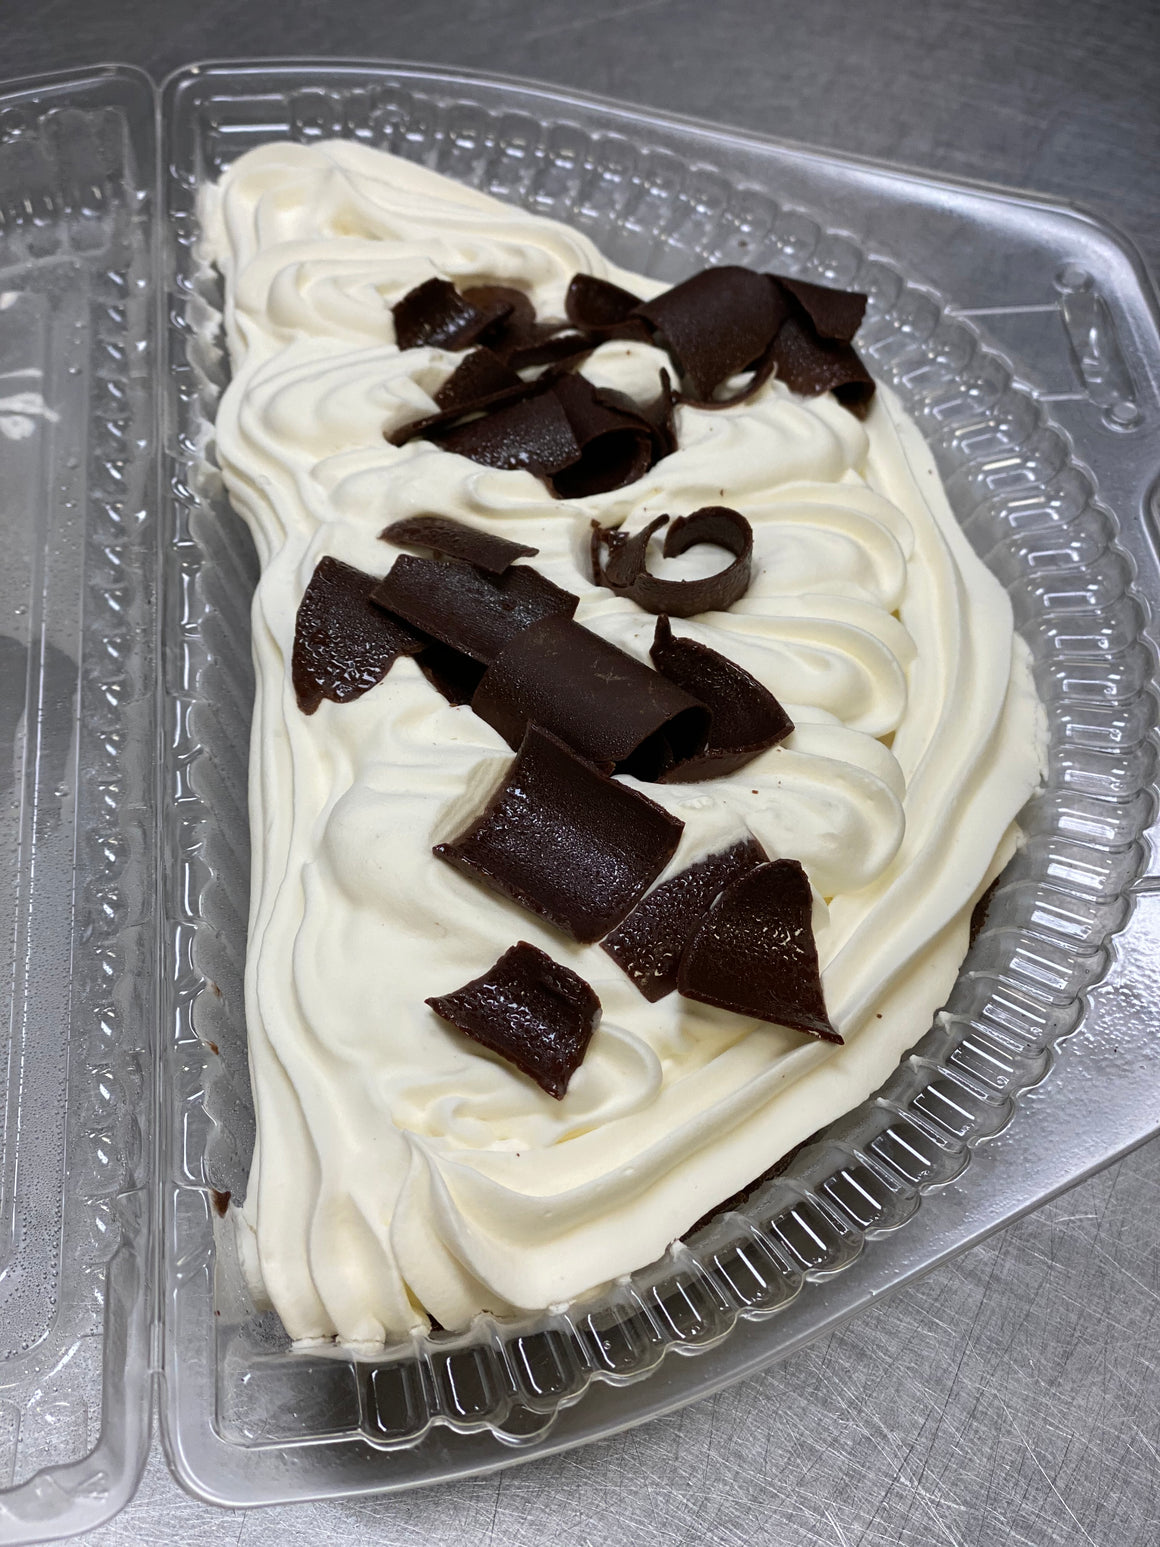 1/2 Pies (Chocolate Silk)